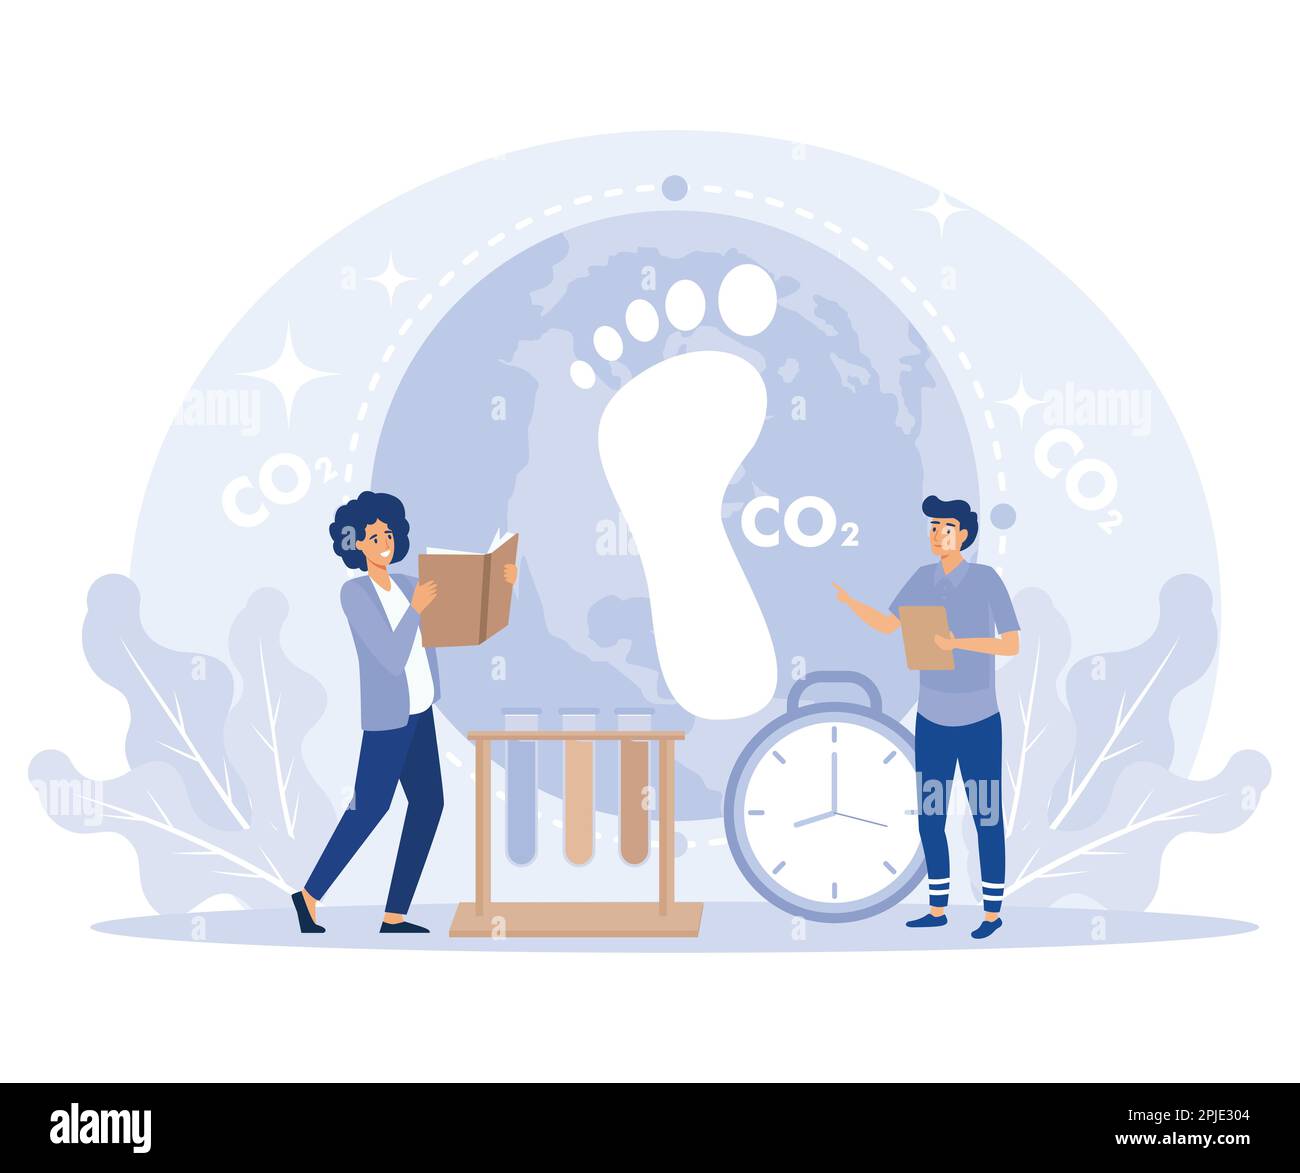 Analyse de l'effet de l'empreinte carbone, pollution de l'environnement avec CO2, les gens analysent l'impact des gaz à effet de serre sur l'environnement, illustration moderne à vecteur plat Illustration de Vecteur